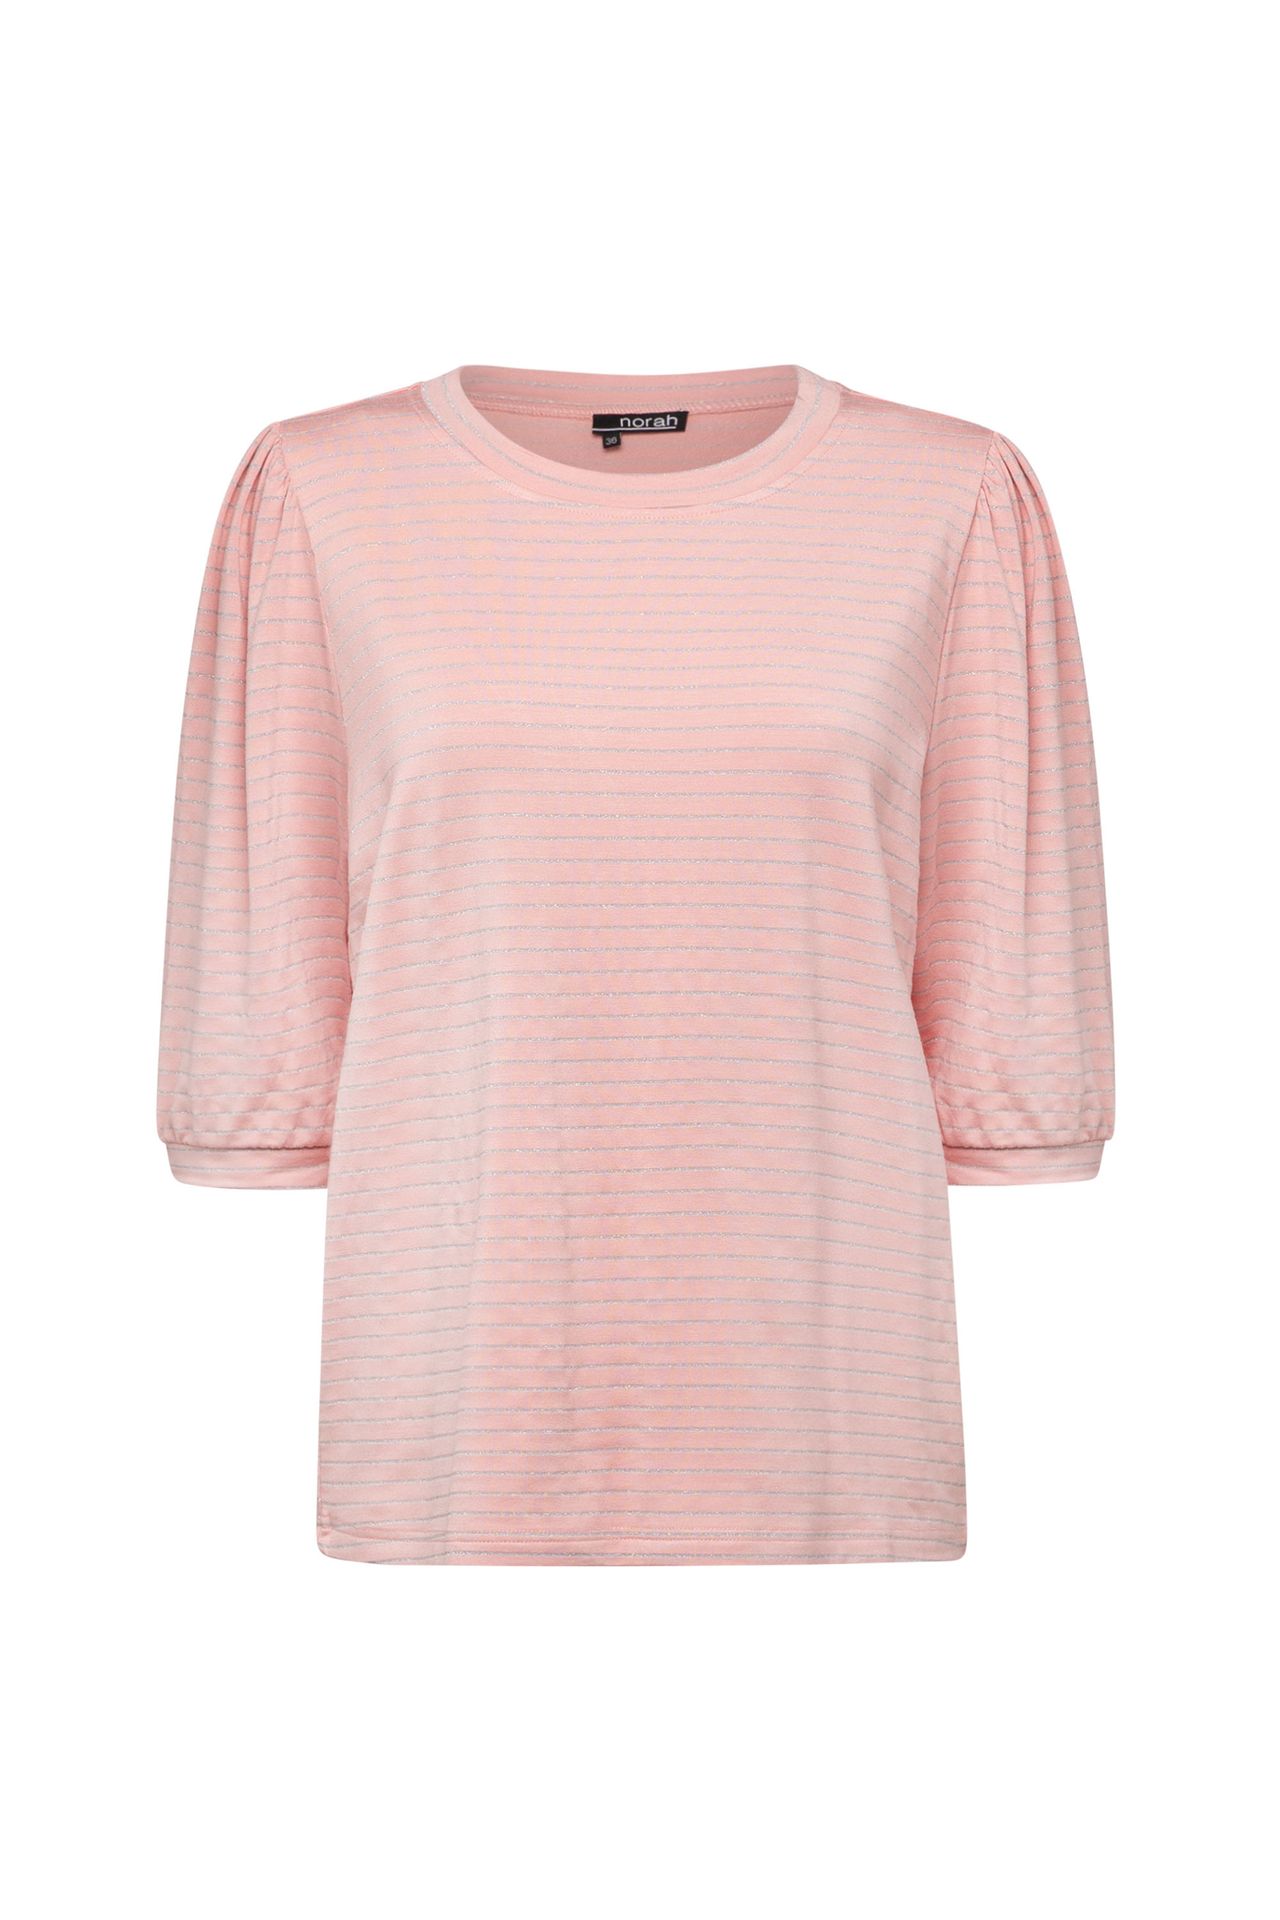 Norah Roze blouse met glitters blush 213533-905